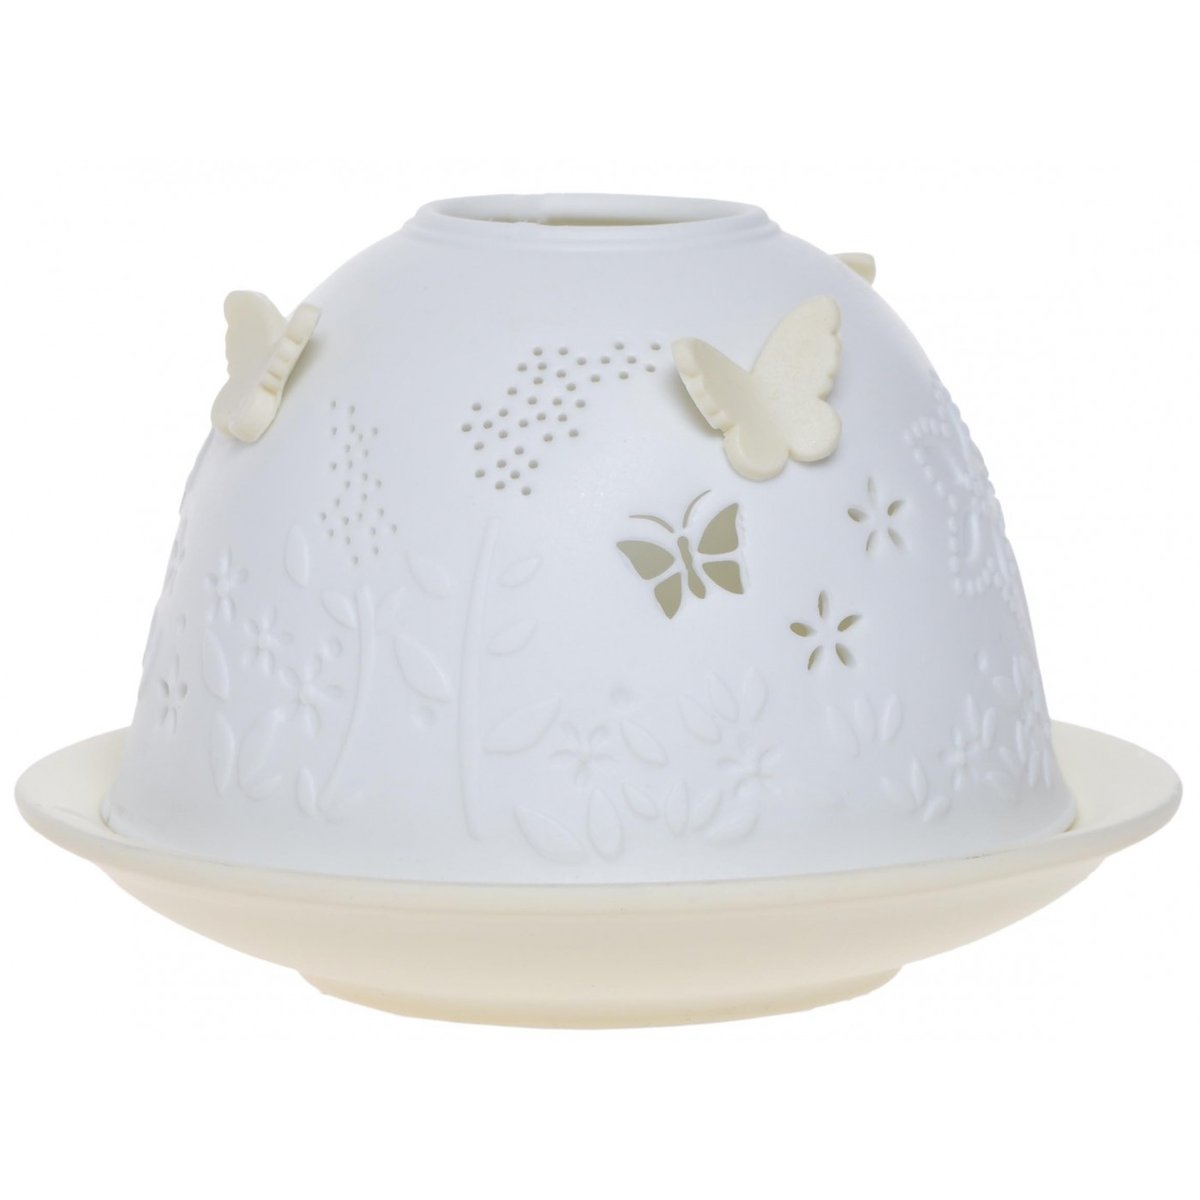 Zdjęcia - Figurka / świecznik Lampion Porcelanowy Biały Z Motylami